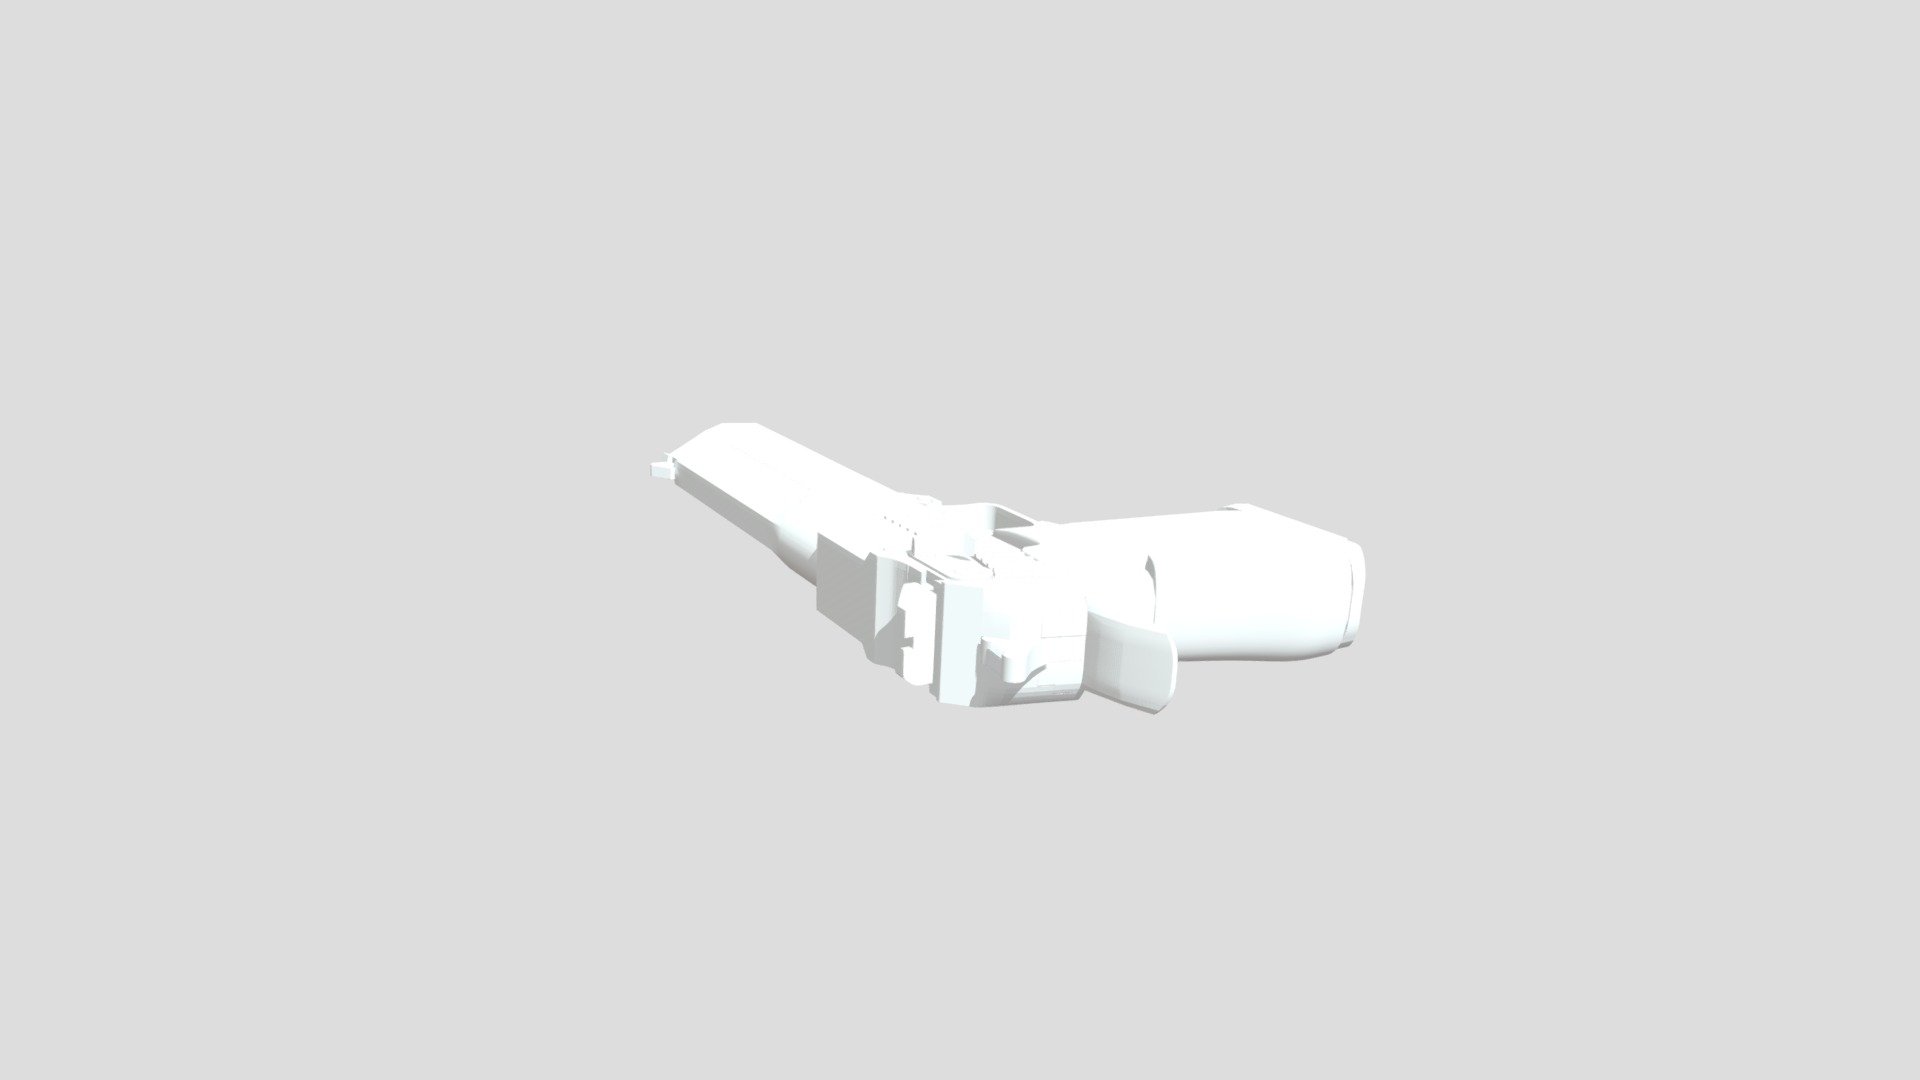 Dejert Eagle - 3D model by Nyaha123 [a376fa1] - Sketchfab